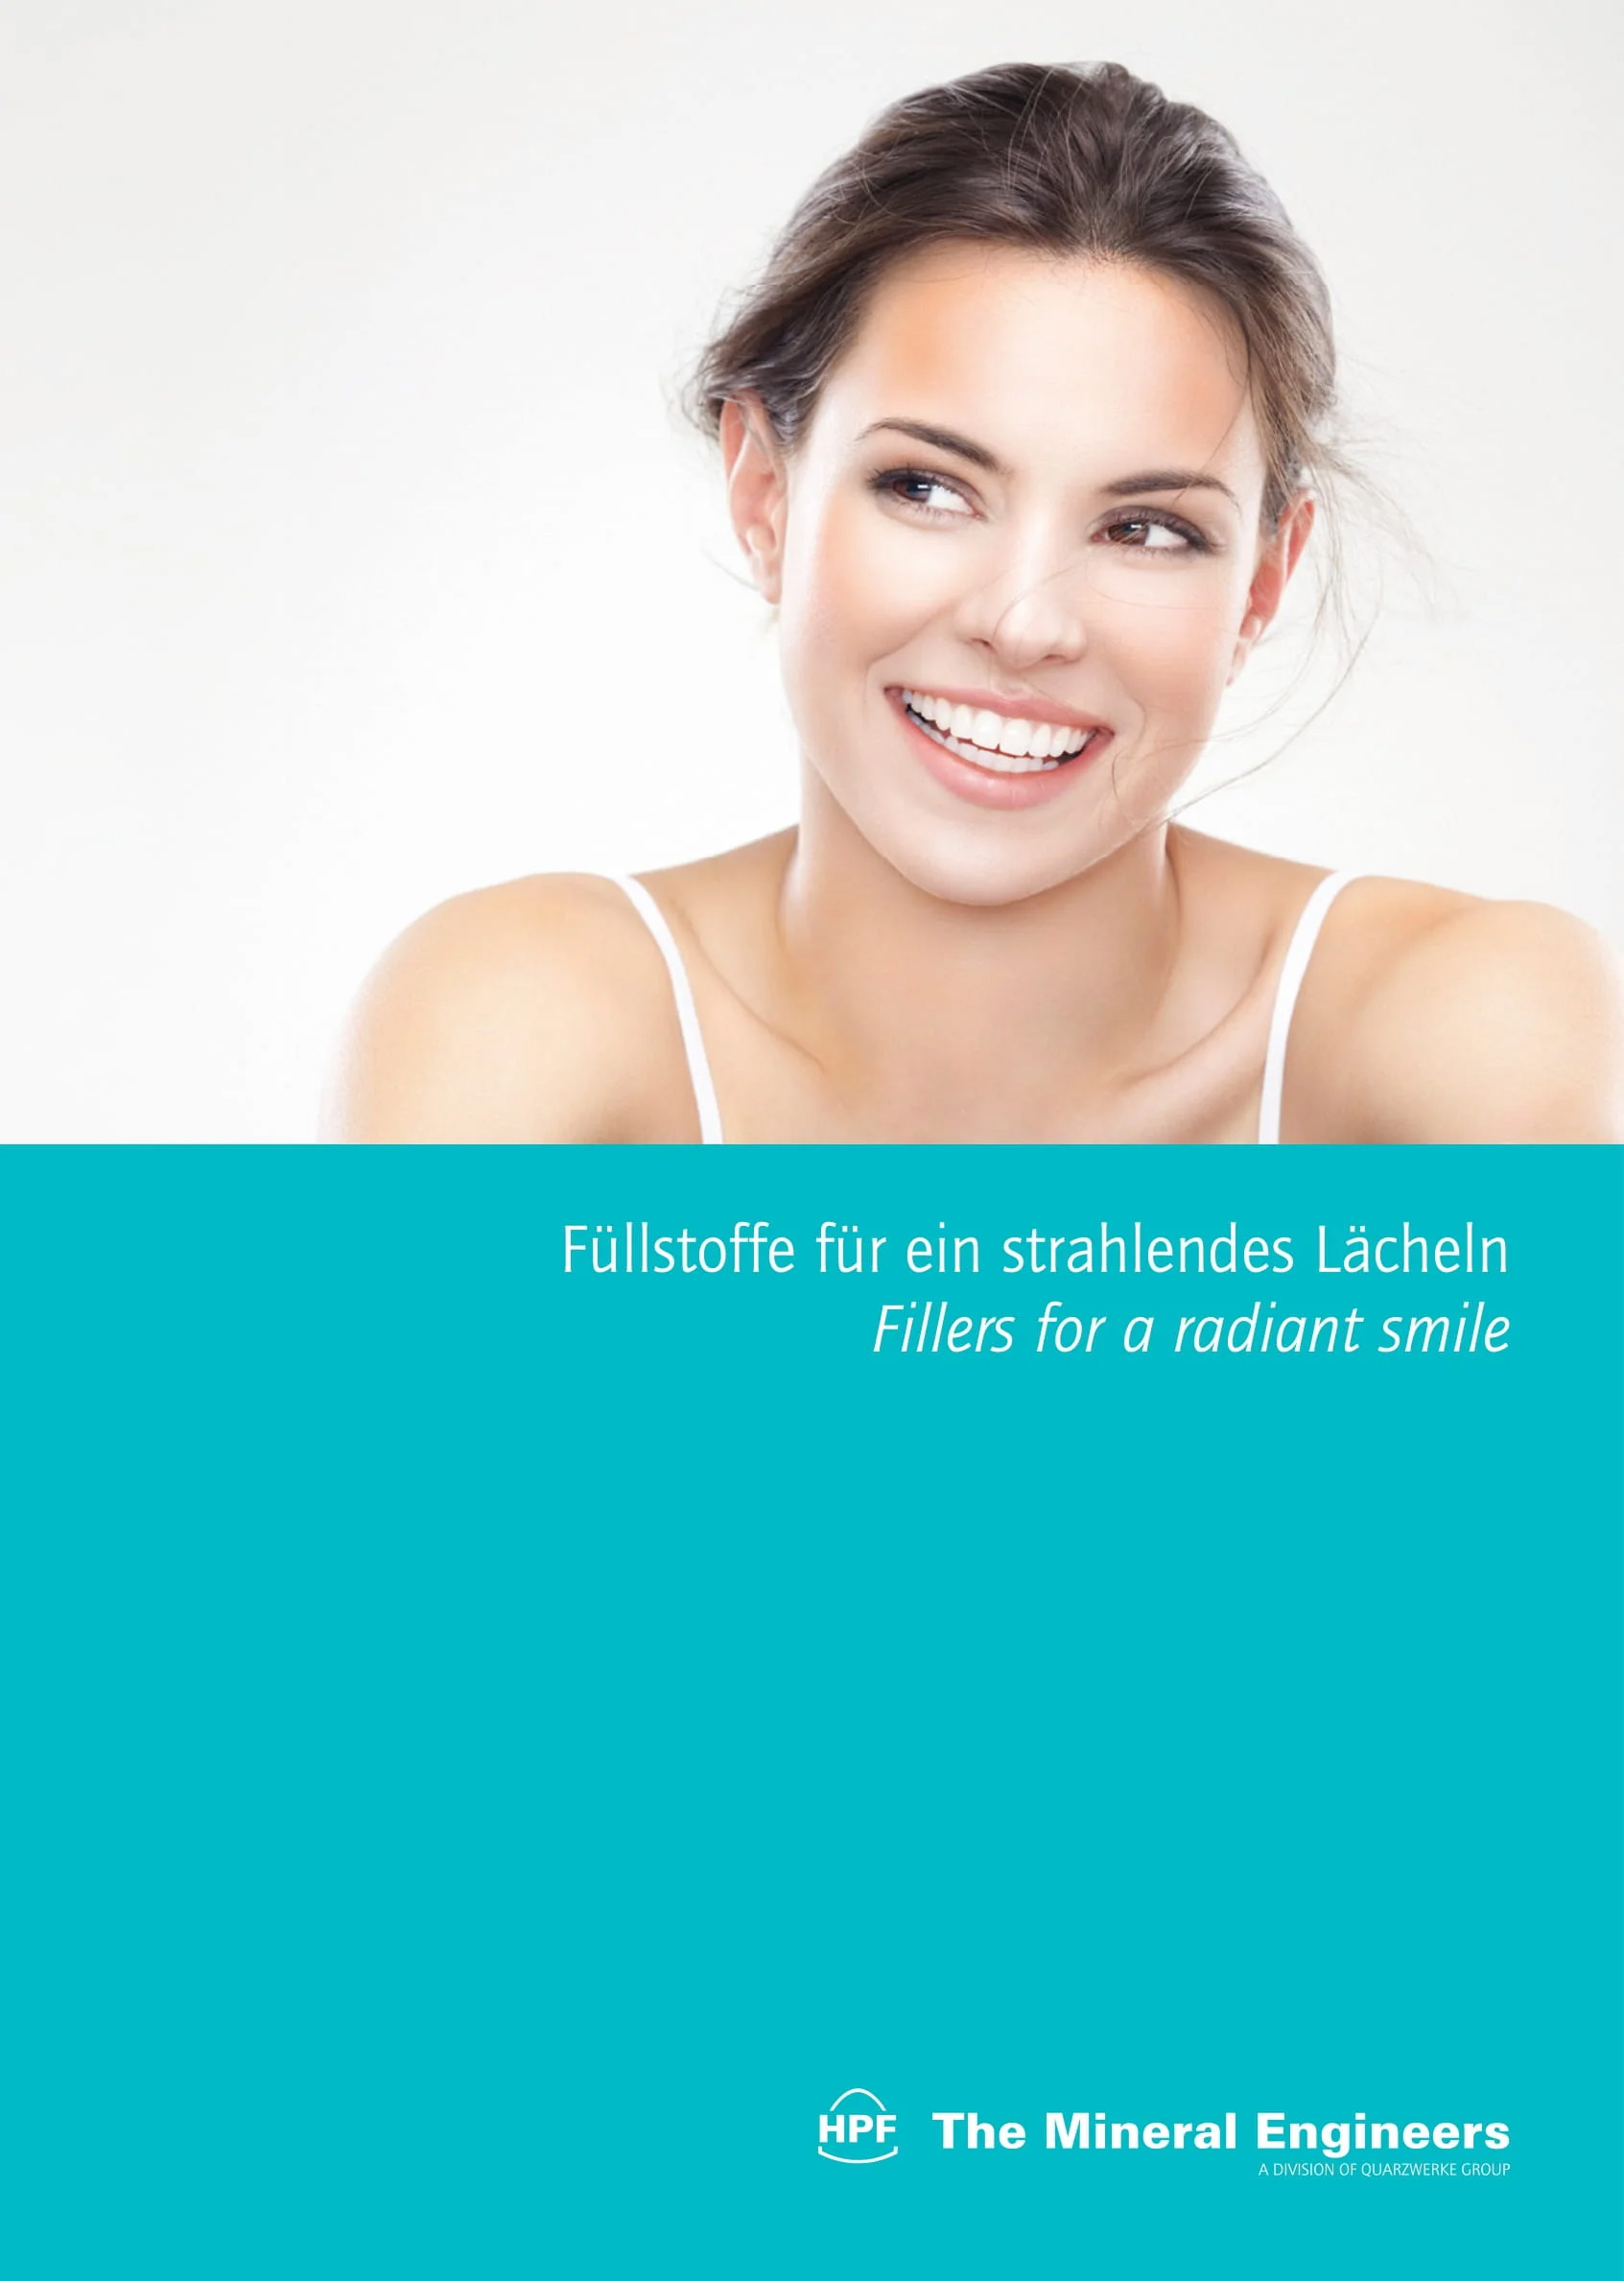 Dental: Füllstoffe für ein strahlendes Lächeln